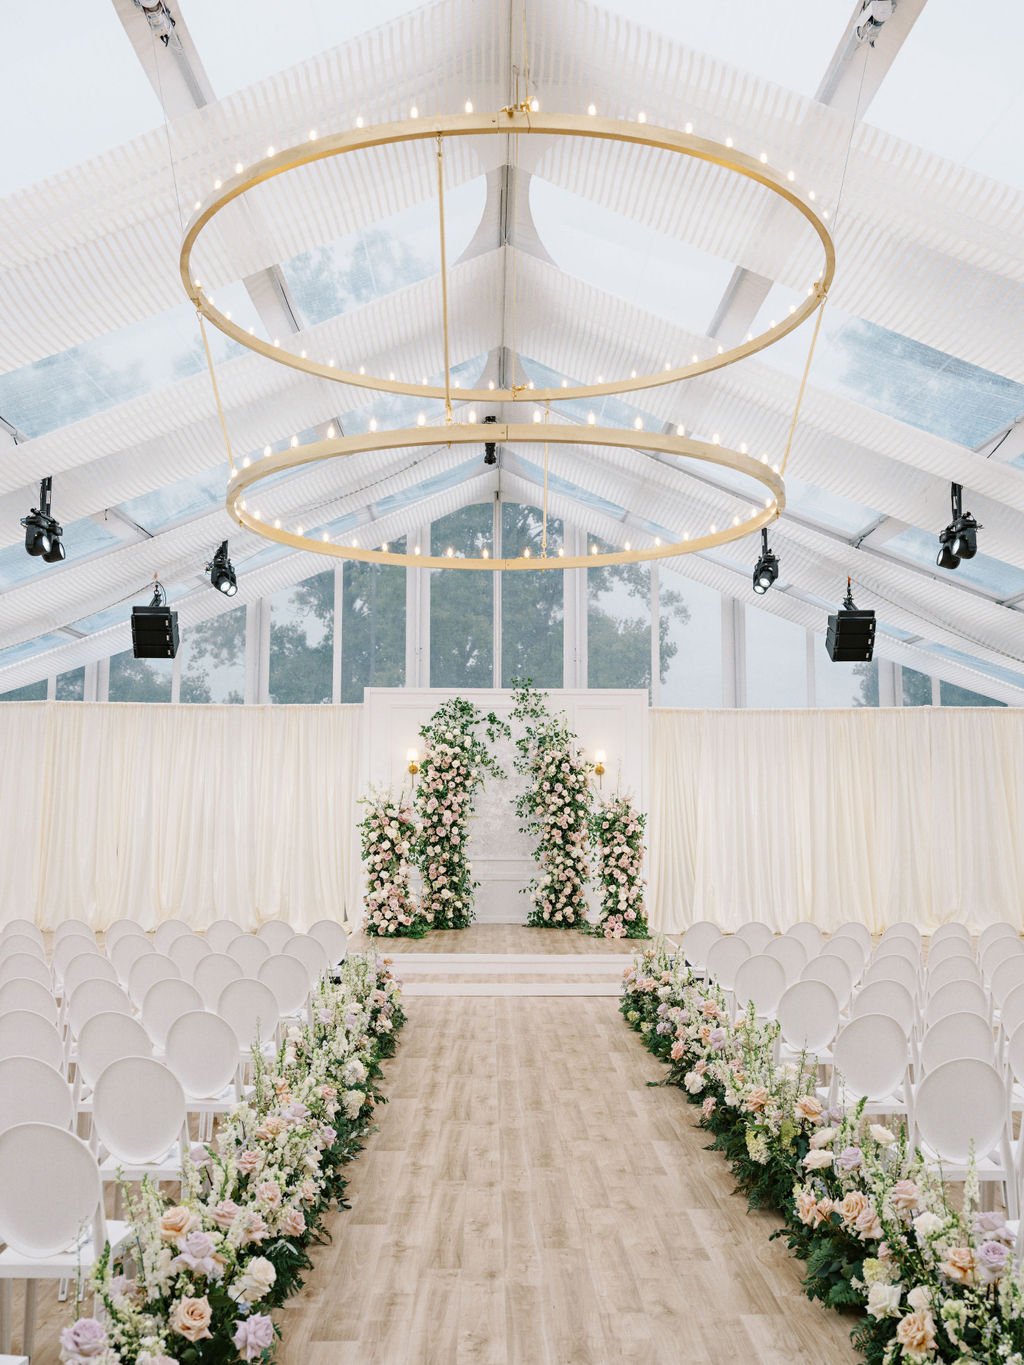 conradie-event-design-michigan-luxury-wedding-planning-design (75).JPG